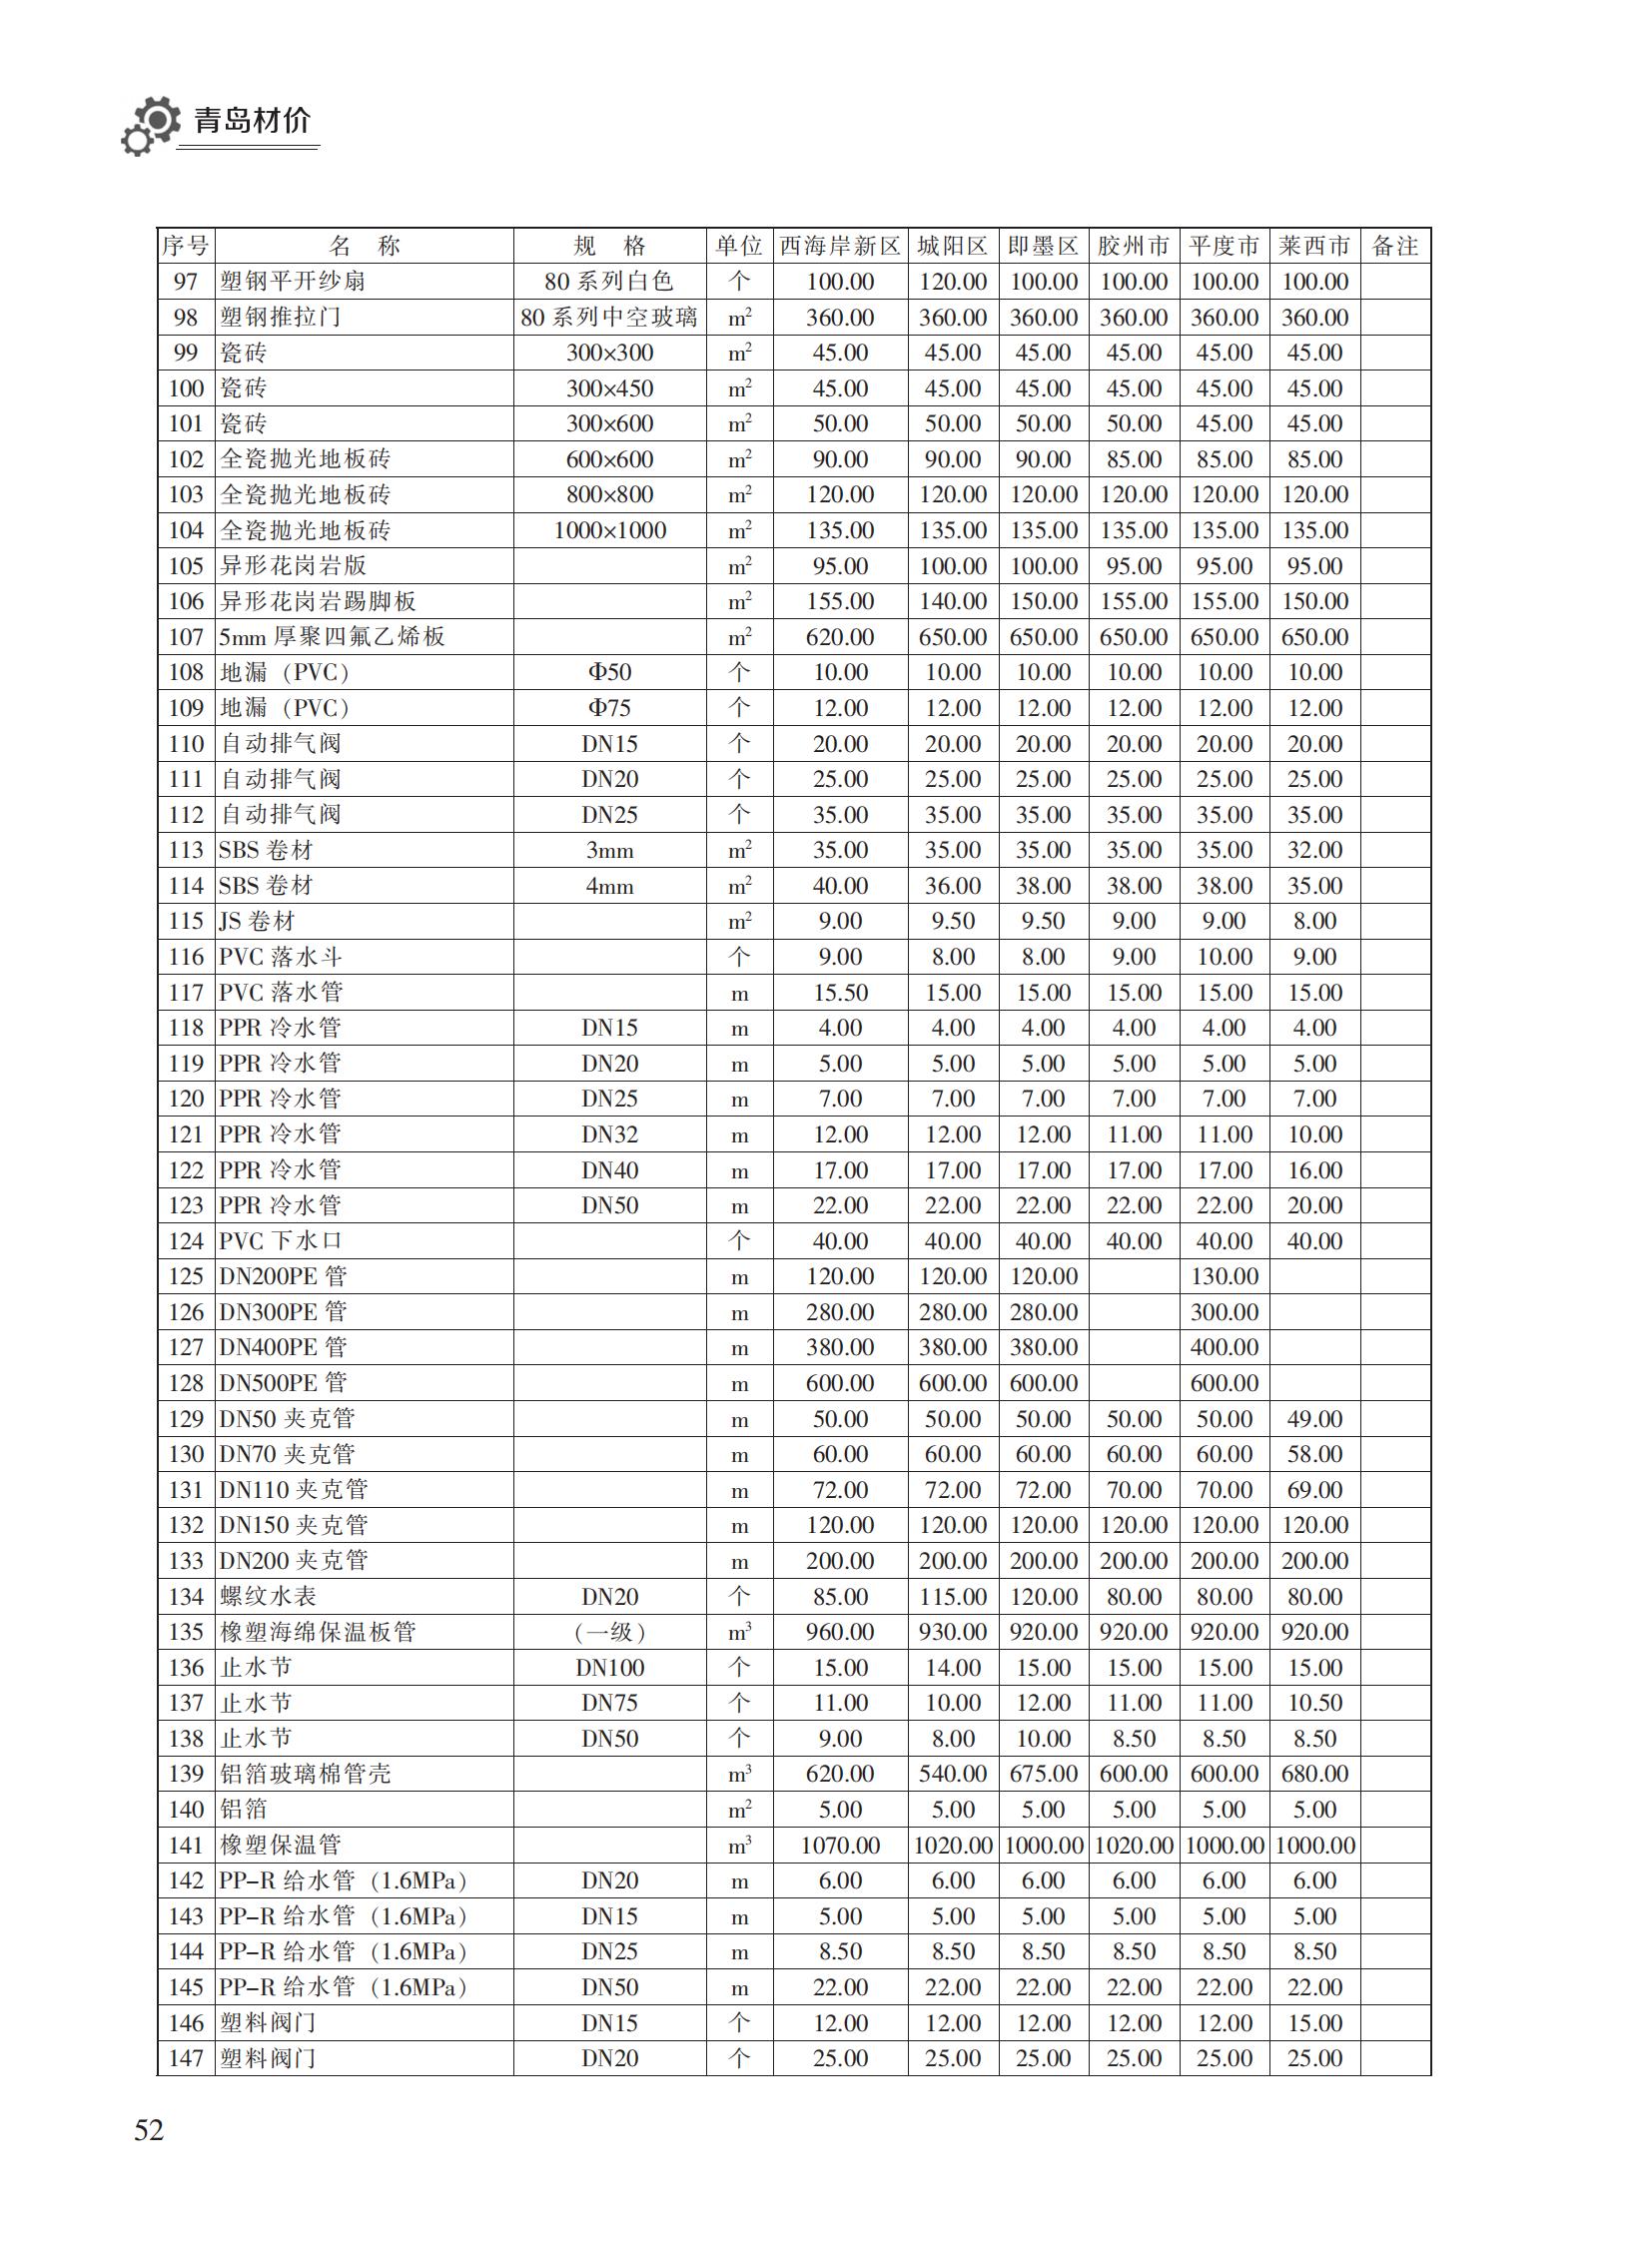 2023年1月青岛市建设工程材料价格及造价指数_51.jpg